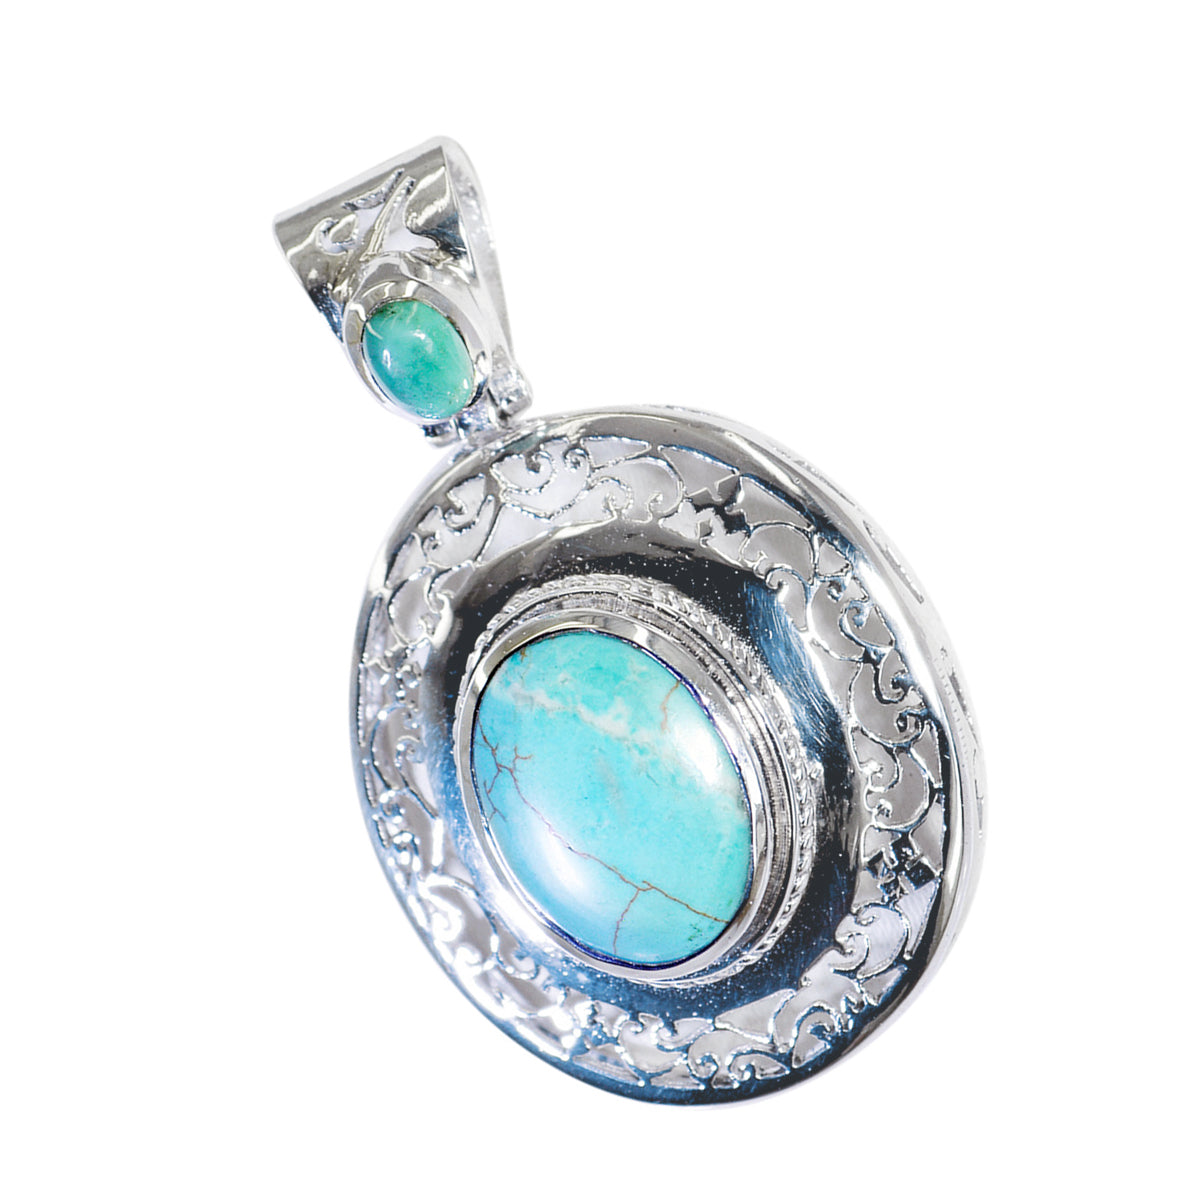 riyo splendide gemme ovale cabochon blu turchese ciondolo in argento massiccio regalo per il Venerdì Santo